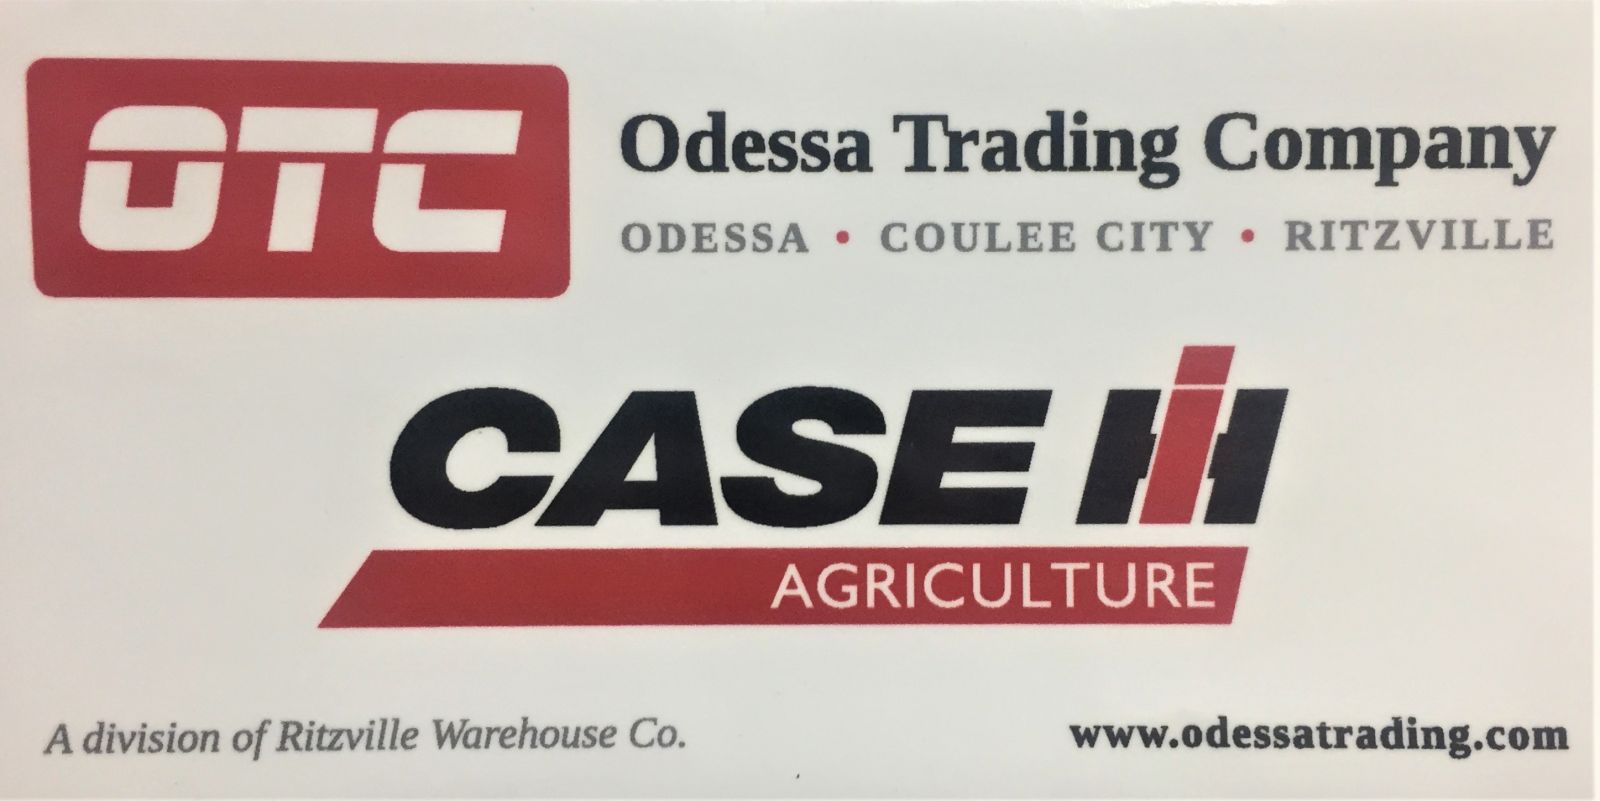 Odessa Trading Company